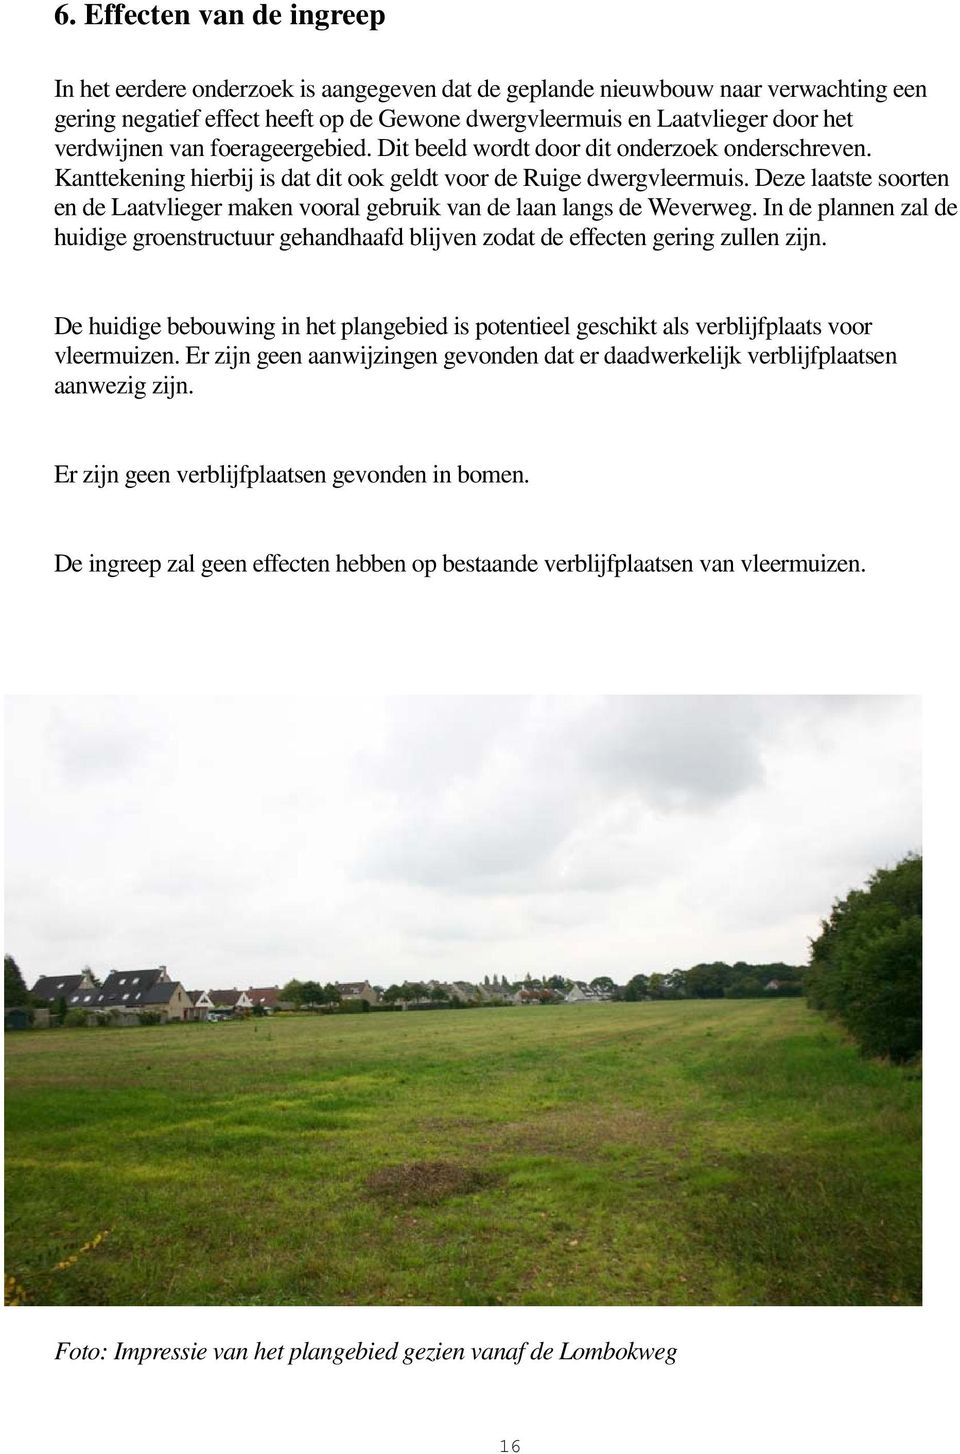 Deze laatste soorten en de Laatvlieger maken vooral gebruik van de laan langs de Weverweg. In de plannen zal de huidige groenstructuur gehandhaafd blijven zodat de effecten gering zullen zijn.